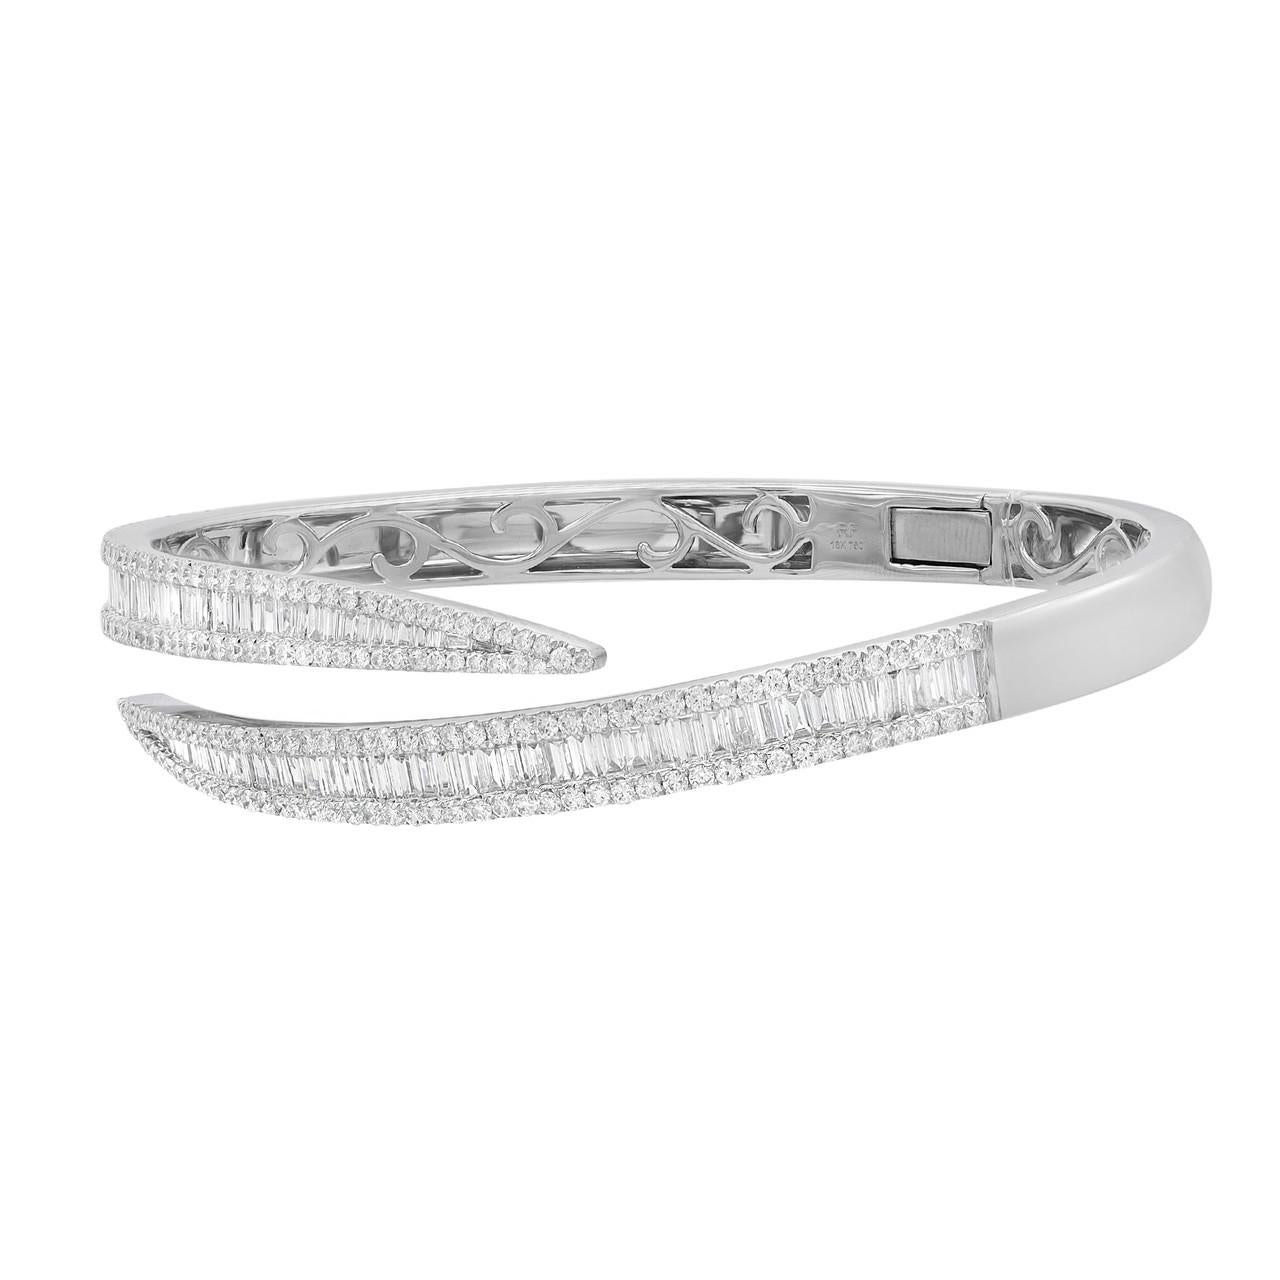 Voici l'étonnant et moderne bracelet Brilliante Fashion Bangle, véritable témoignage de la beauté des diamants. Ce bracelet exquis présente une rangée centrale de diamants taille baguette sertis verticalement, entourés de rangées de diamants taille